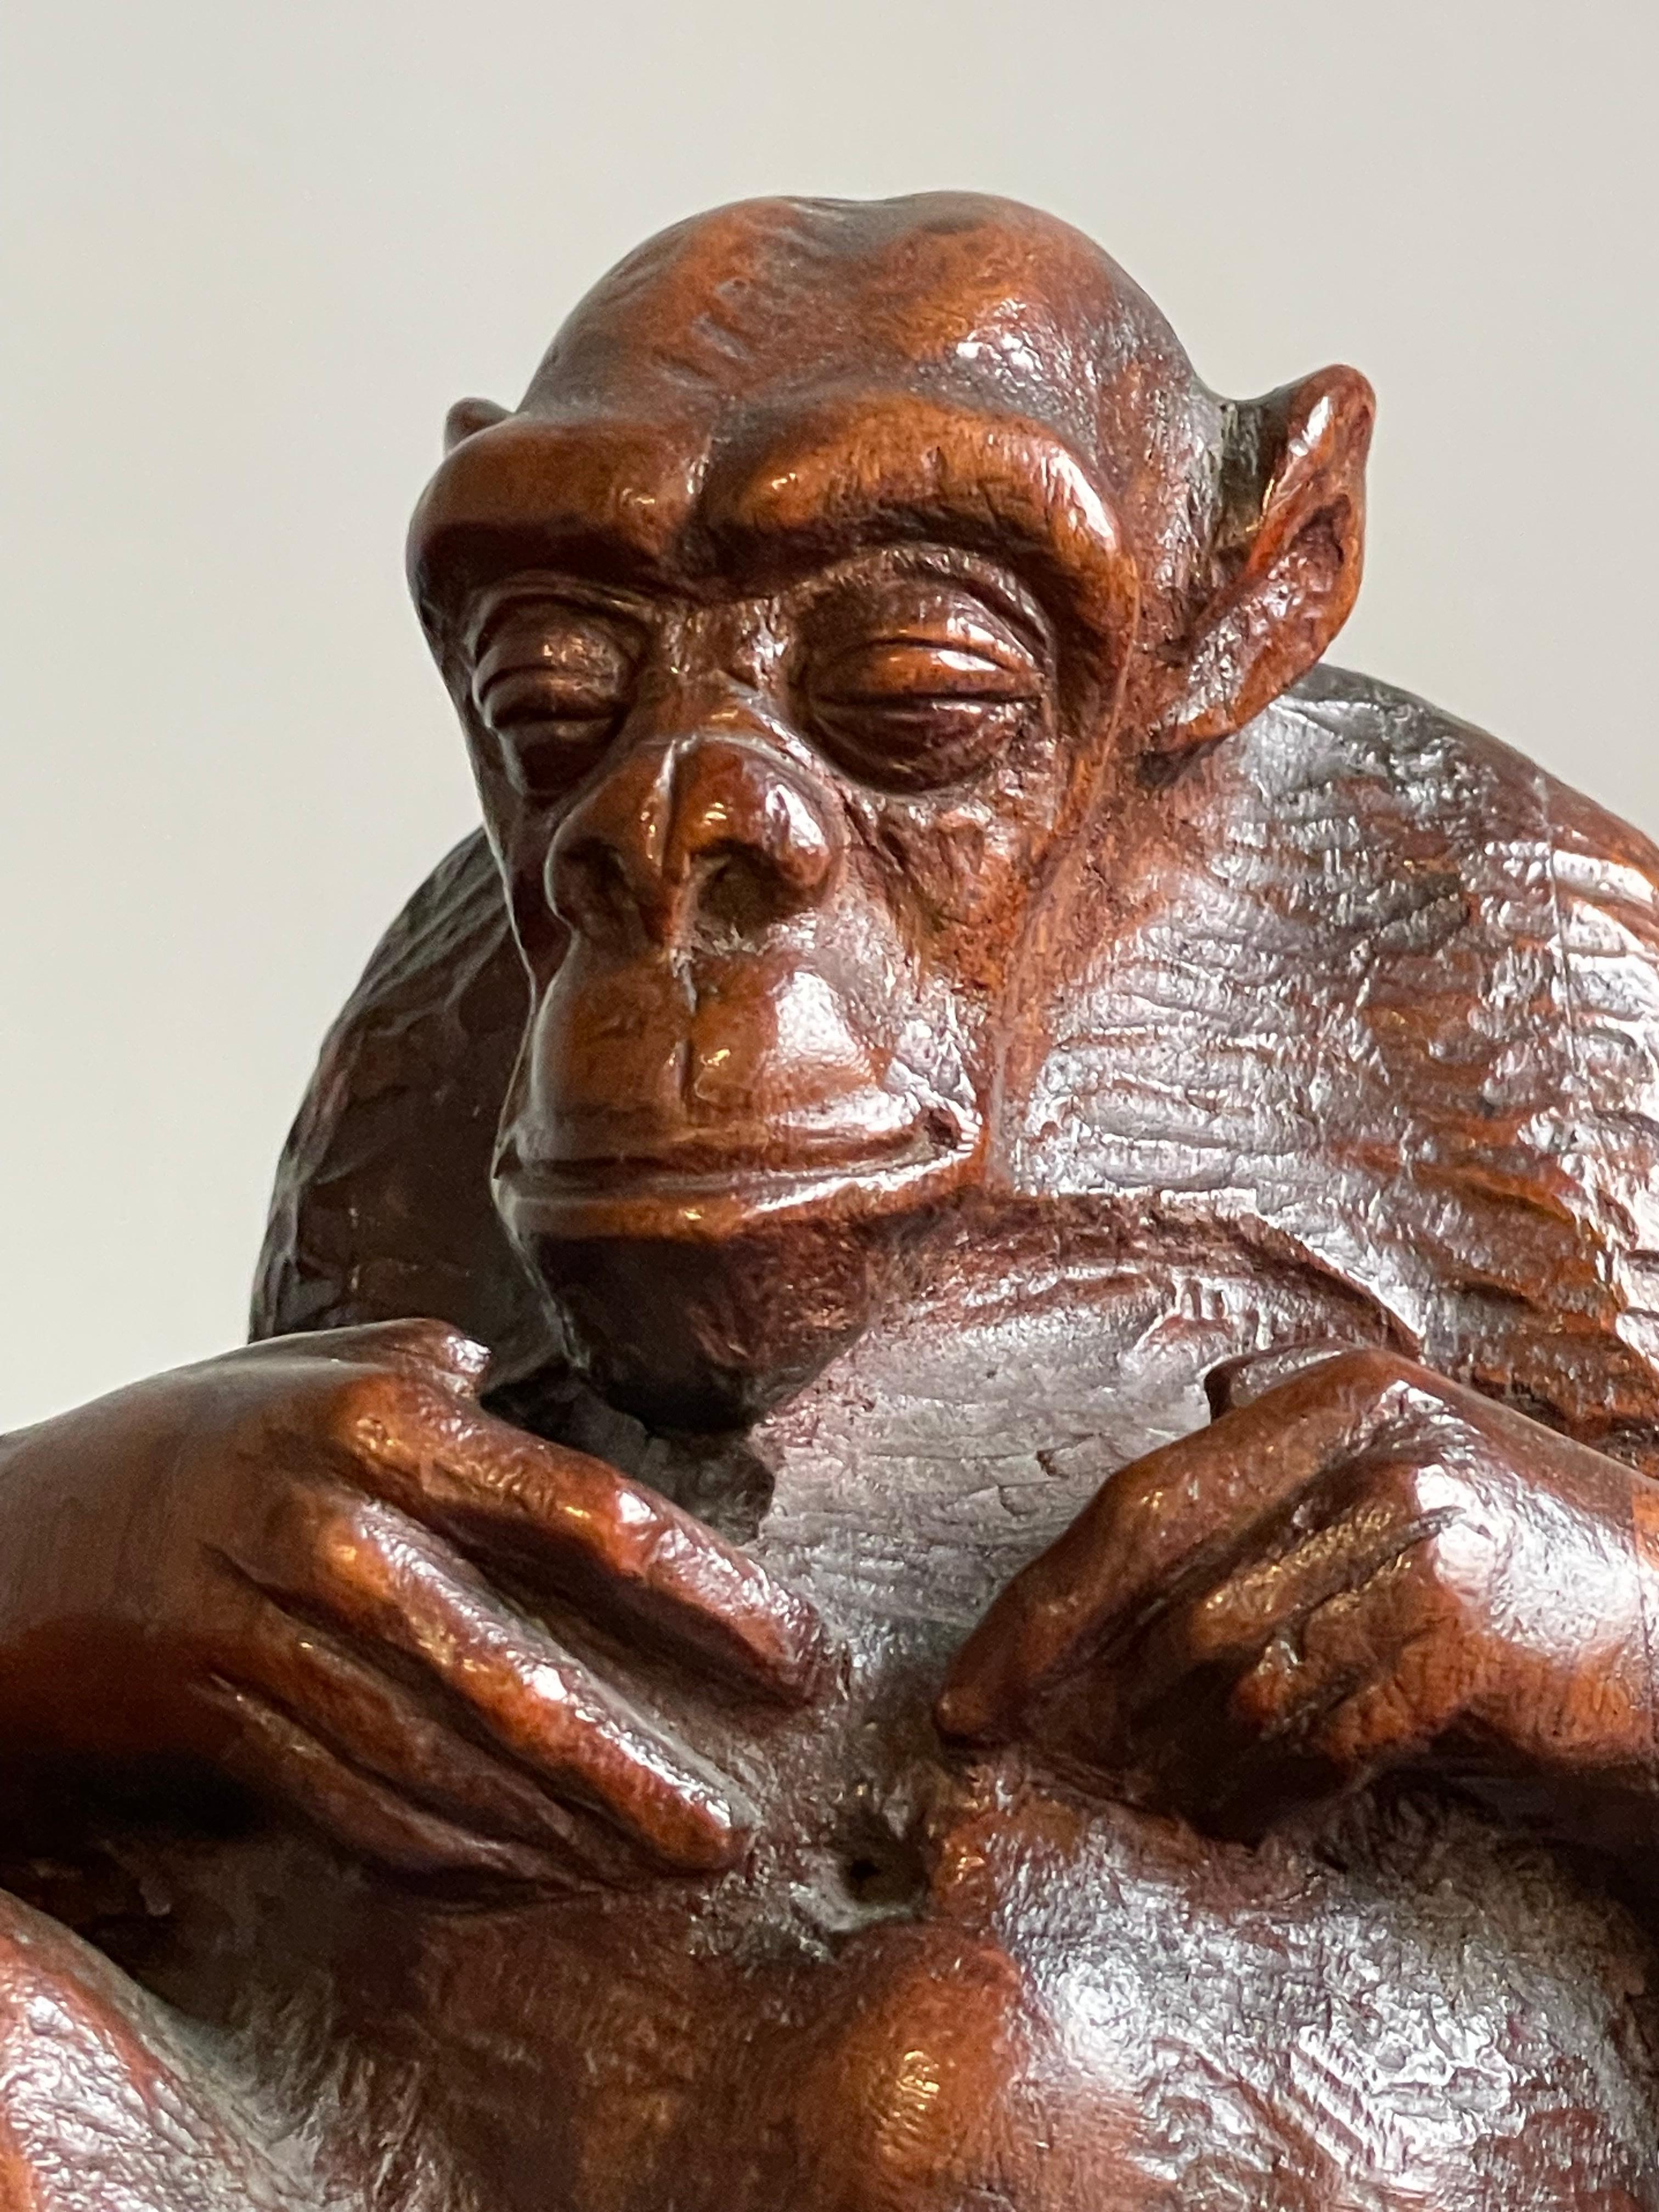 Dieser wunderbare und aussagekräftige antike Schimpanse ist aus vielen Gründen schön.

Diese seltene und entzückende Schimpansenskulptur zaubert nicht nur ein Lächeln auf jedes Gesicht, sondern beeindruckt auch durch die Qualität der Schnitzerei